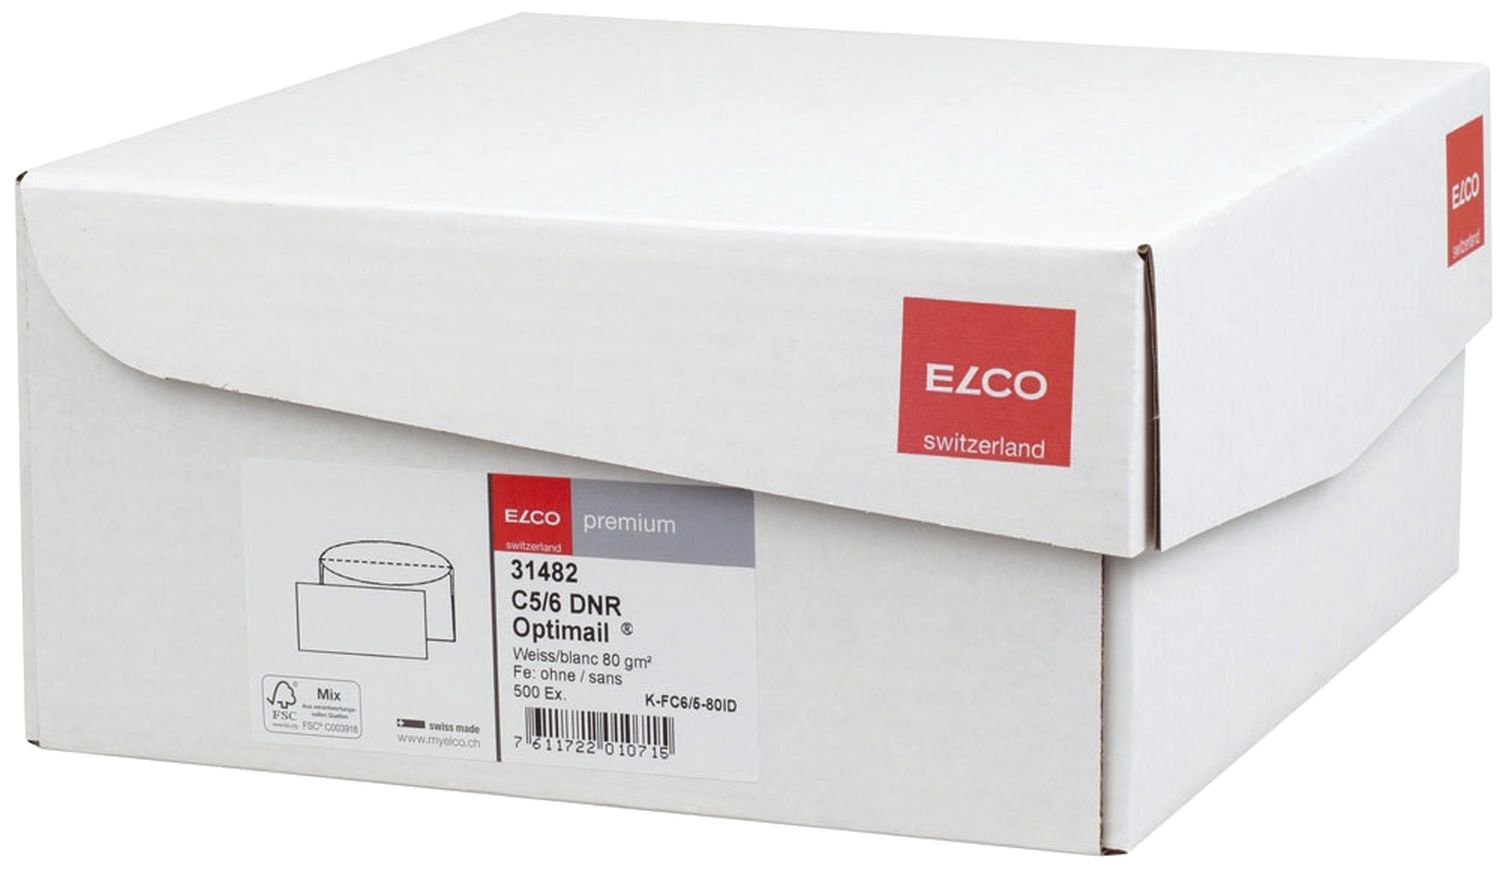 Kuvertierhülle Elco premium 31482, C6/5 DIN lang, weiß, nassklebend, ohne Fenster, 80 g/qm, 500 Stück in Office Box mit Deckel